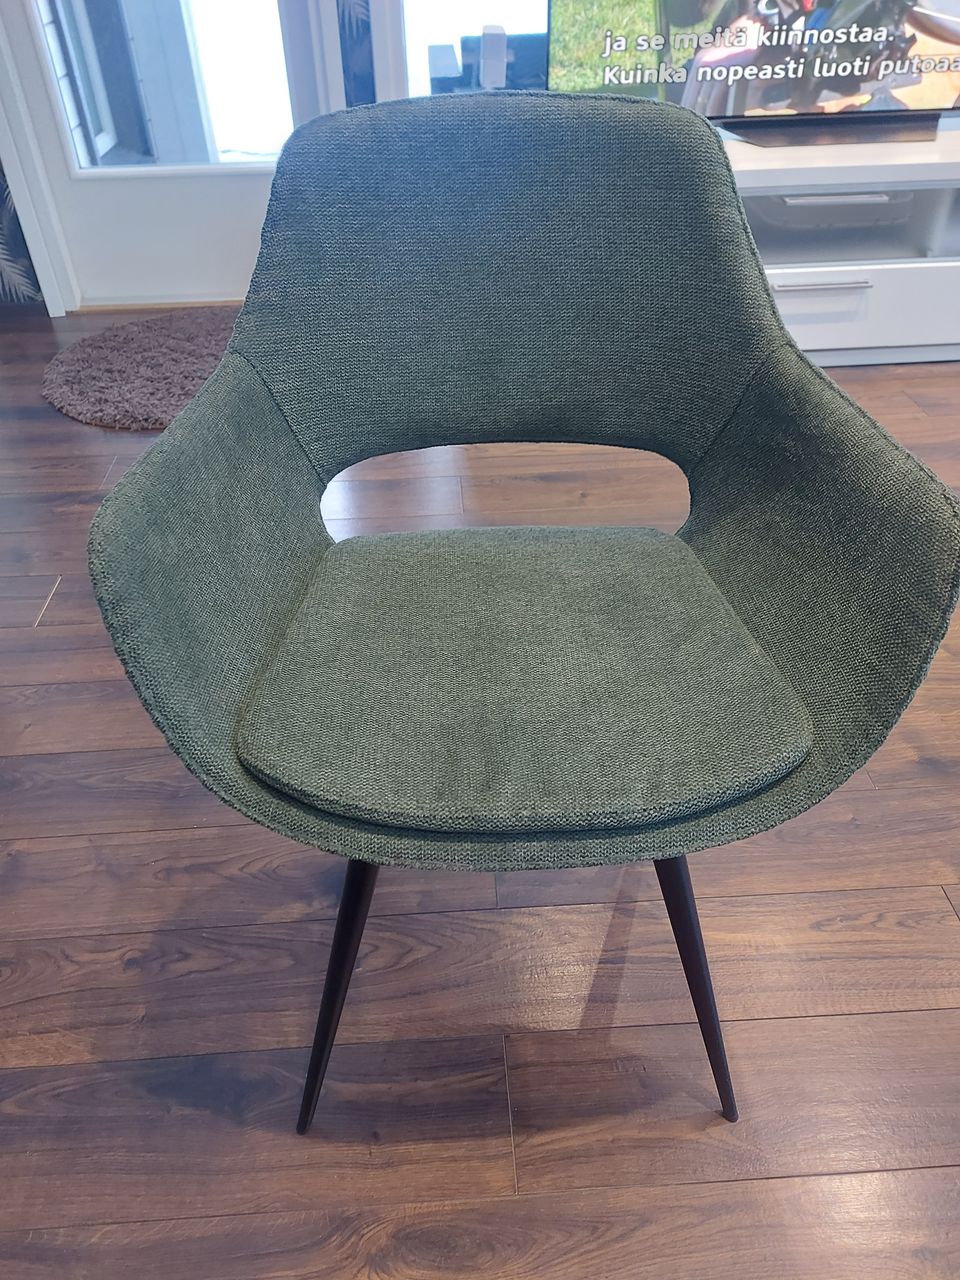 Uusi tuoli vihreä